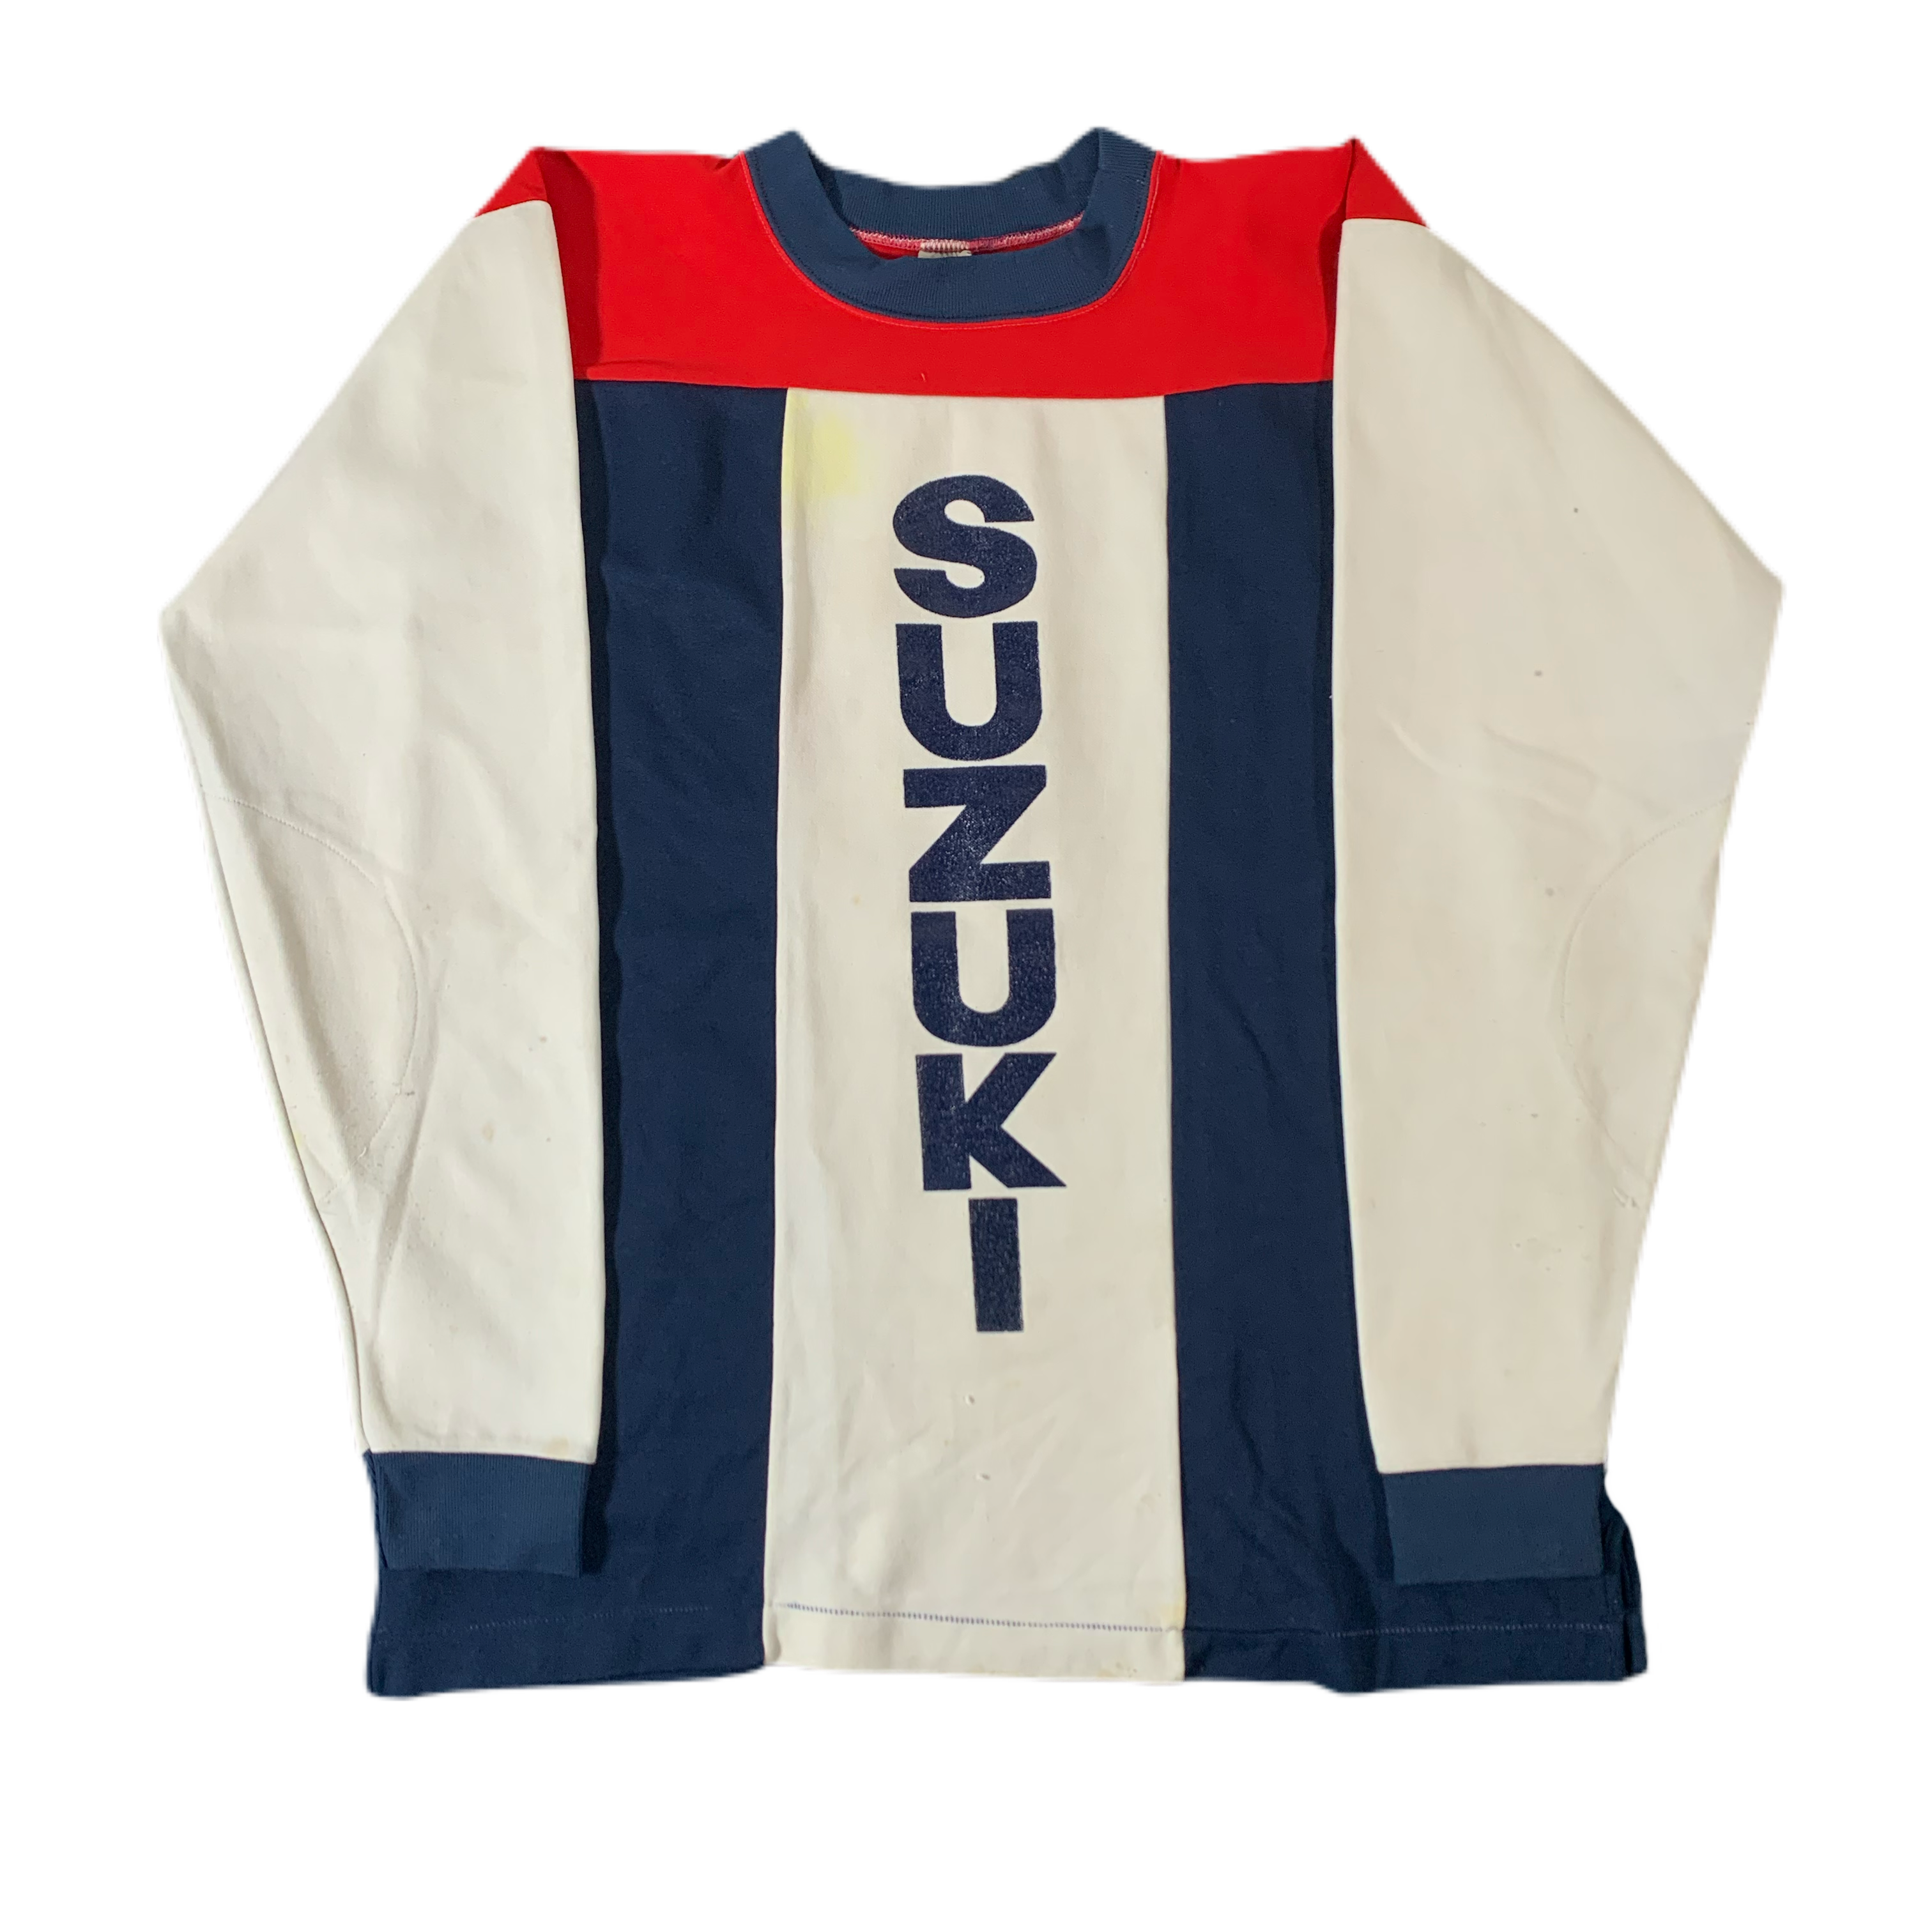 suzuki jersey